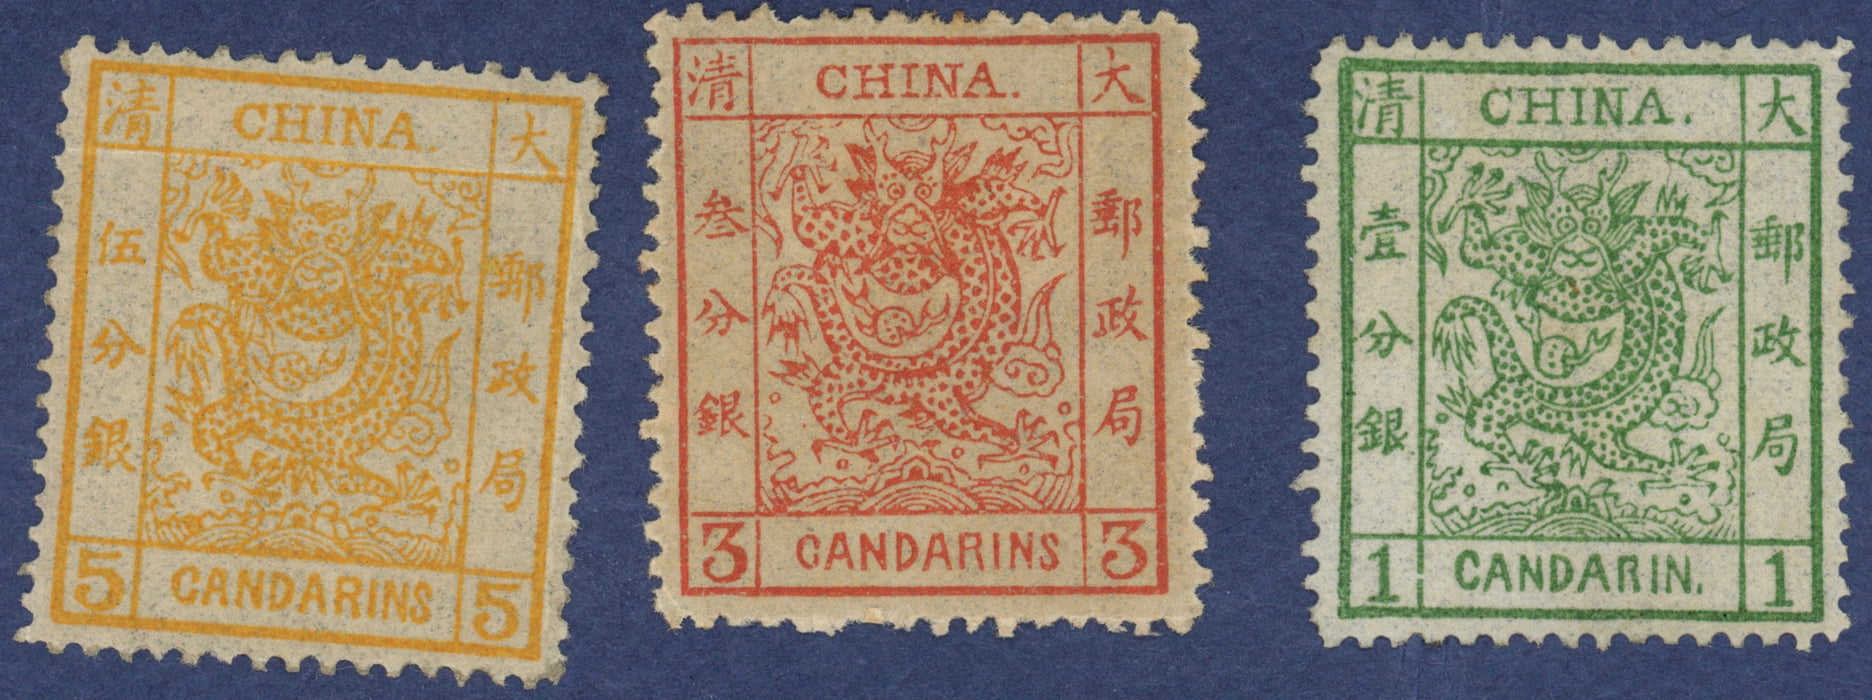 China 1878 Large Dragons set, SG1/3